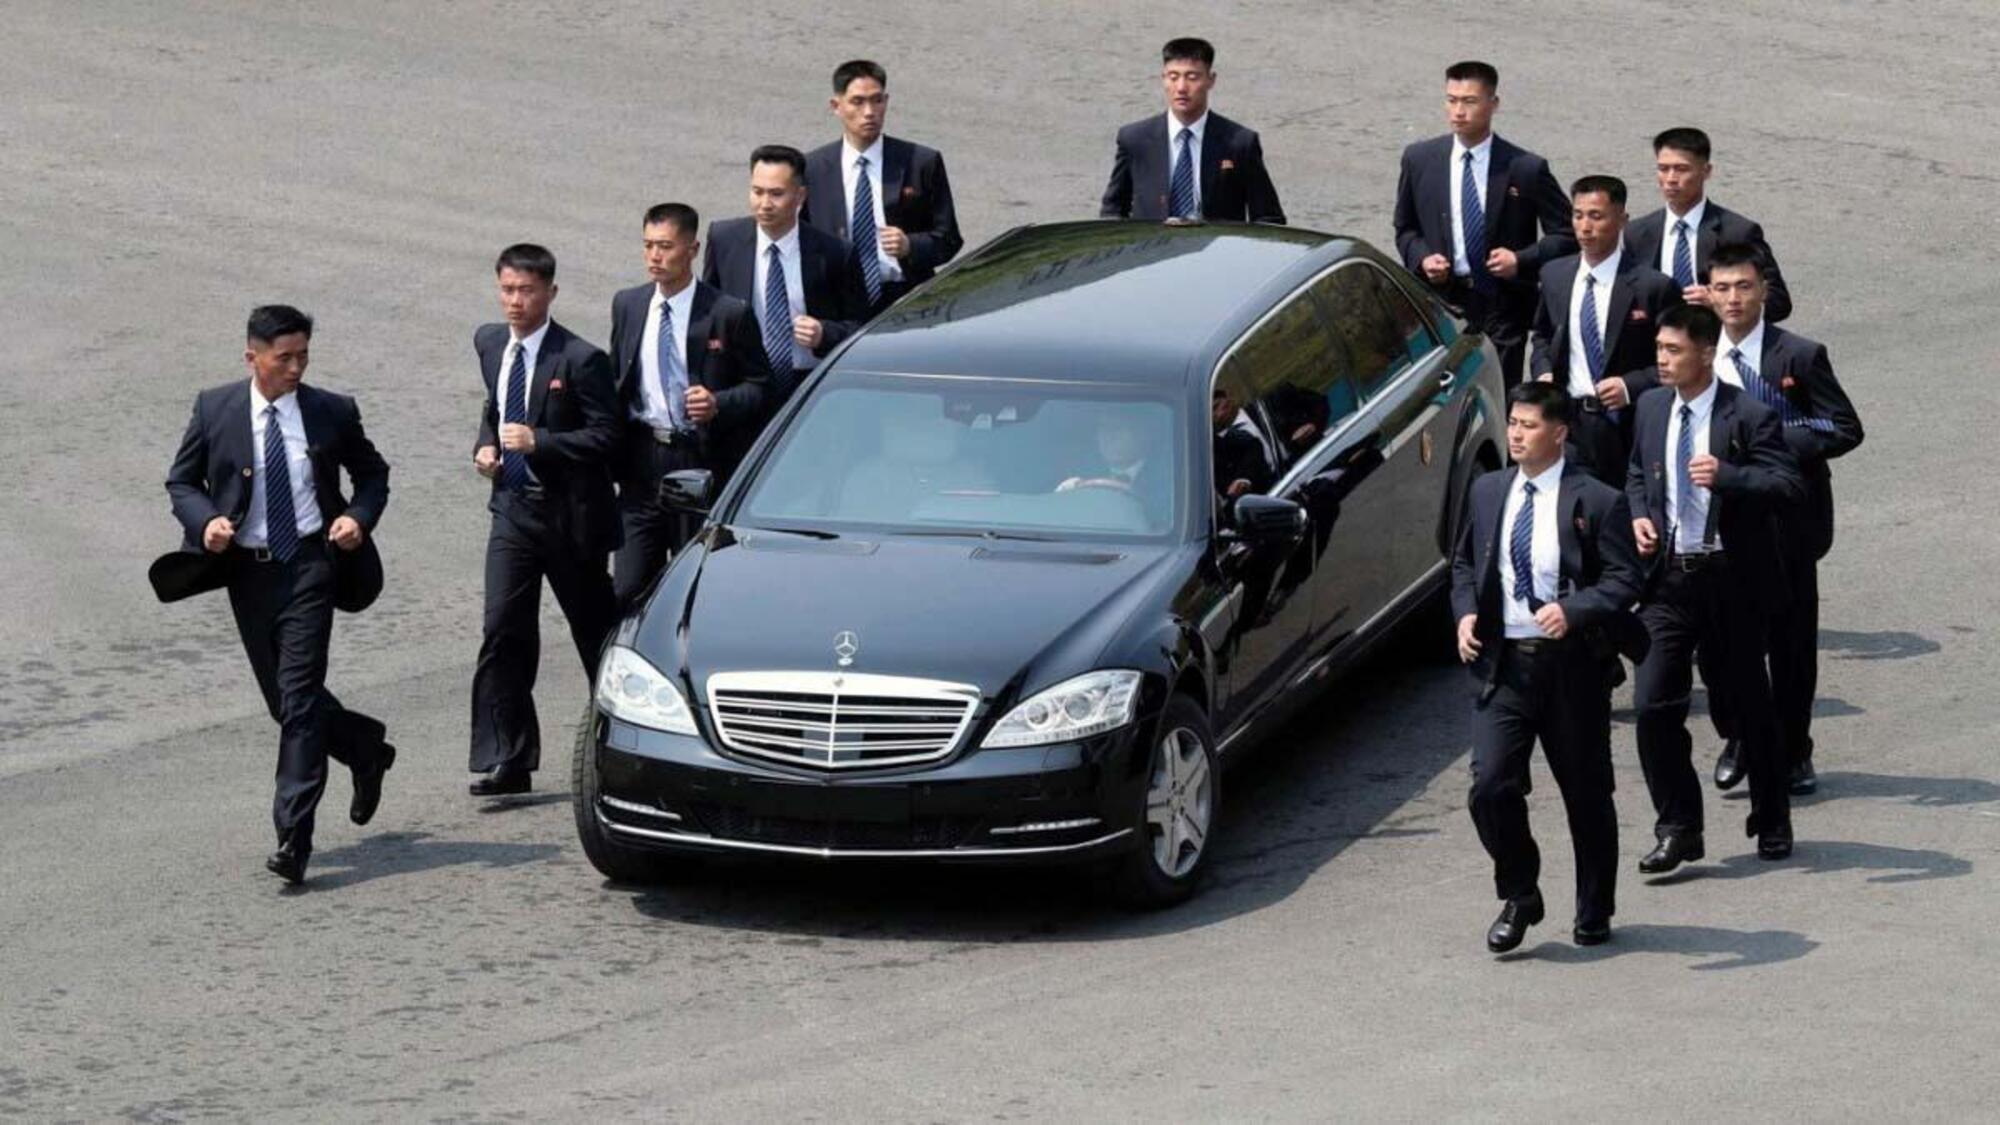 Il corteo presidenziale nordcoreano con logo Mercedes ben visibile